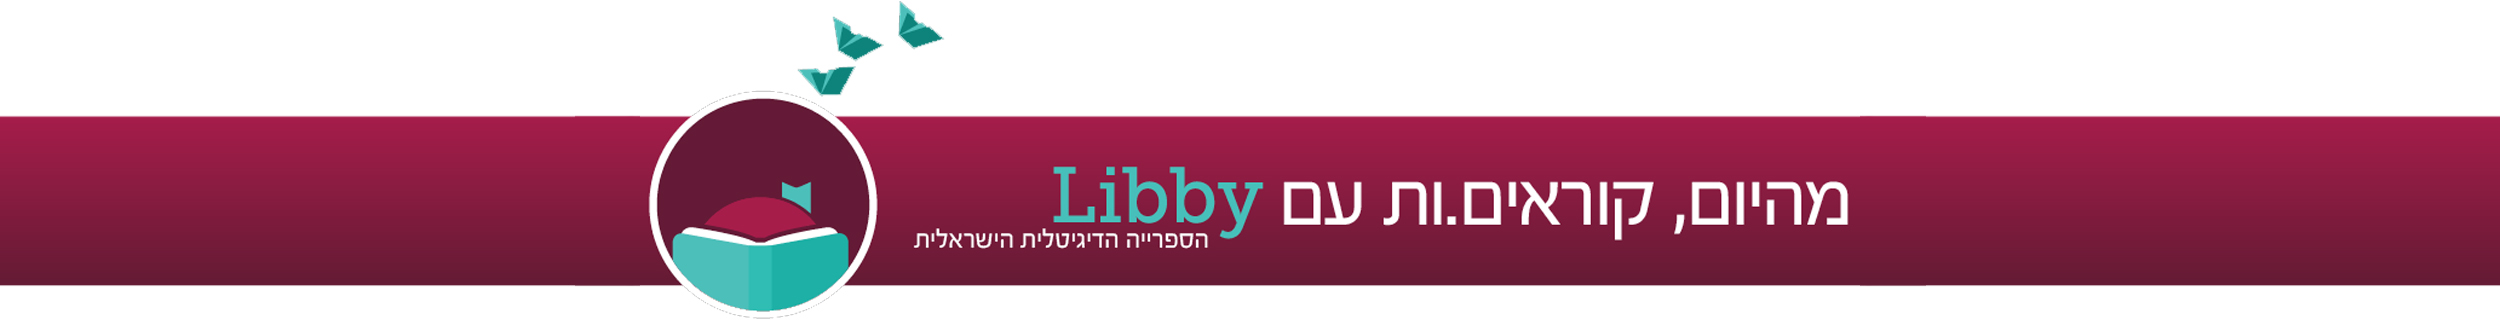 הספרייה הדיגיטלית הישראלית